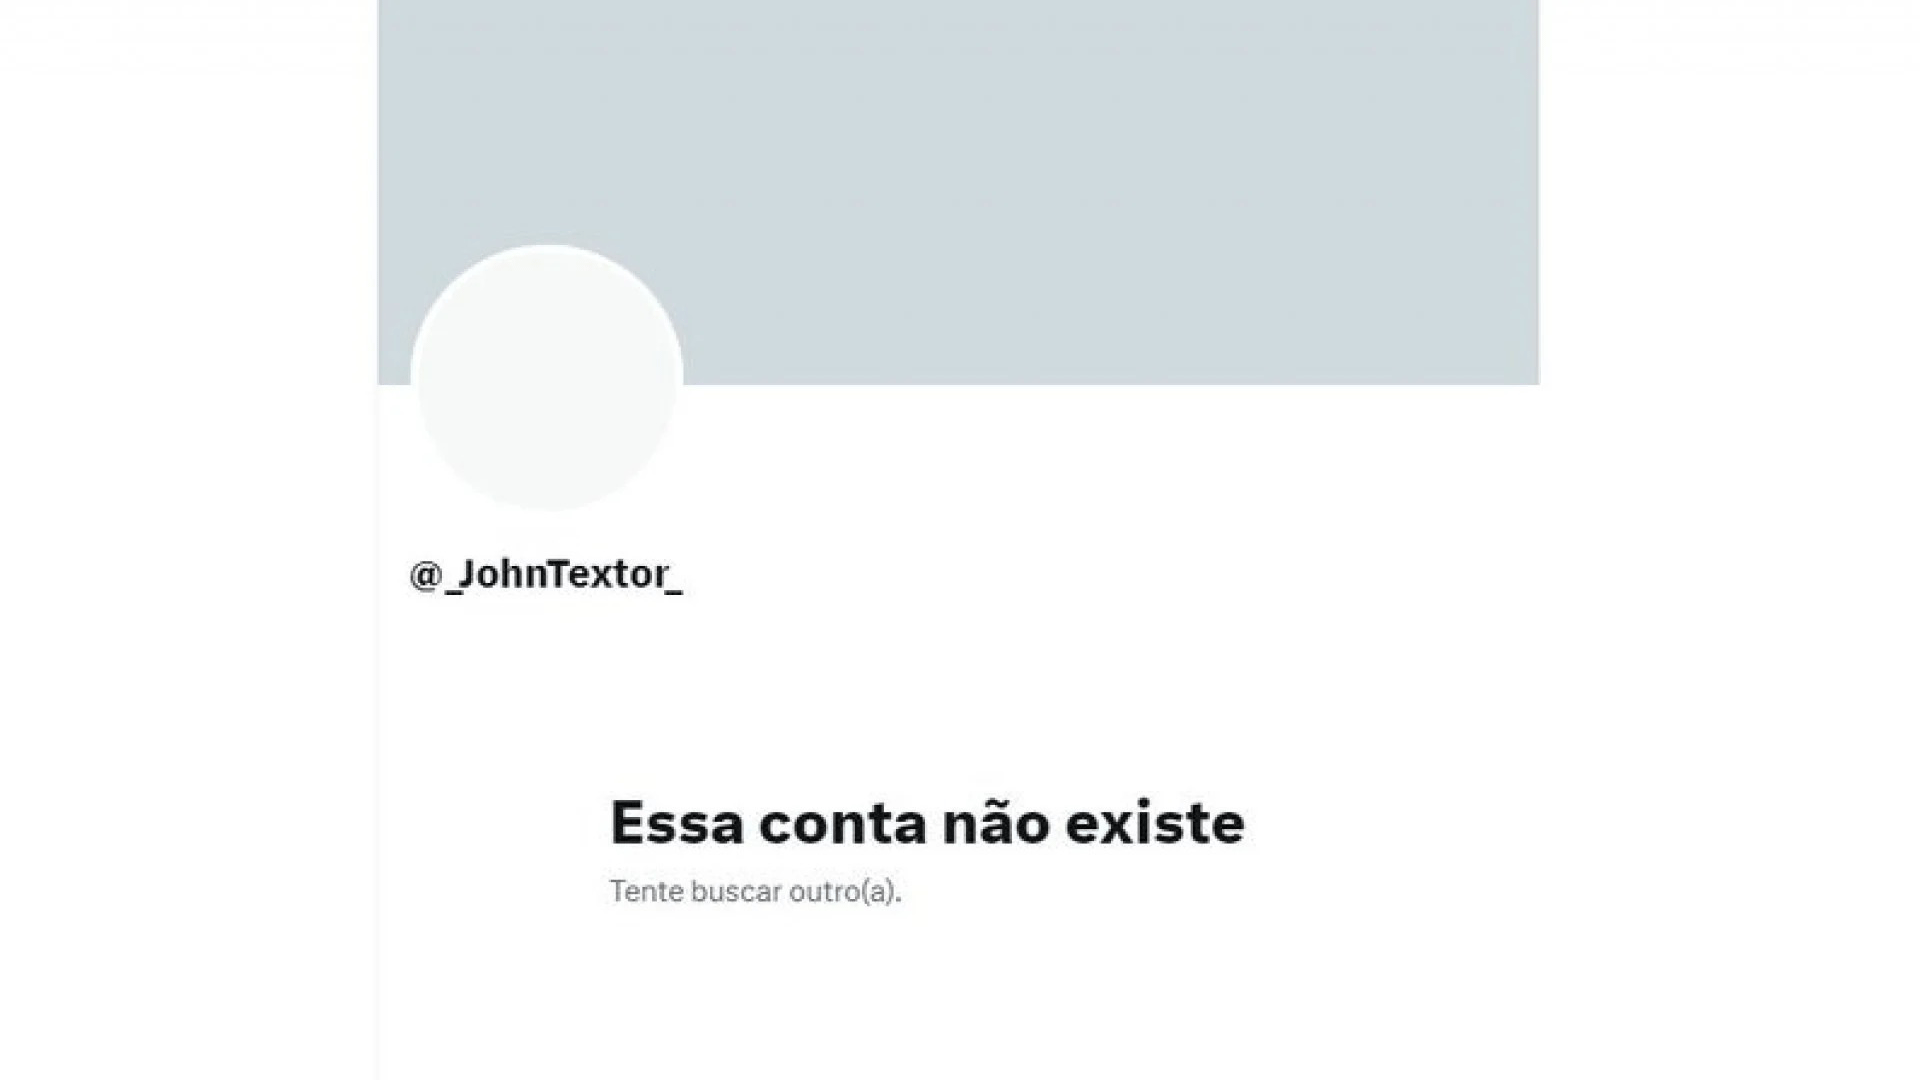 Aviso de conta inexistente no "X", após John Textor desativar conta na rede social.